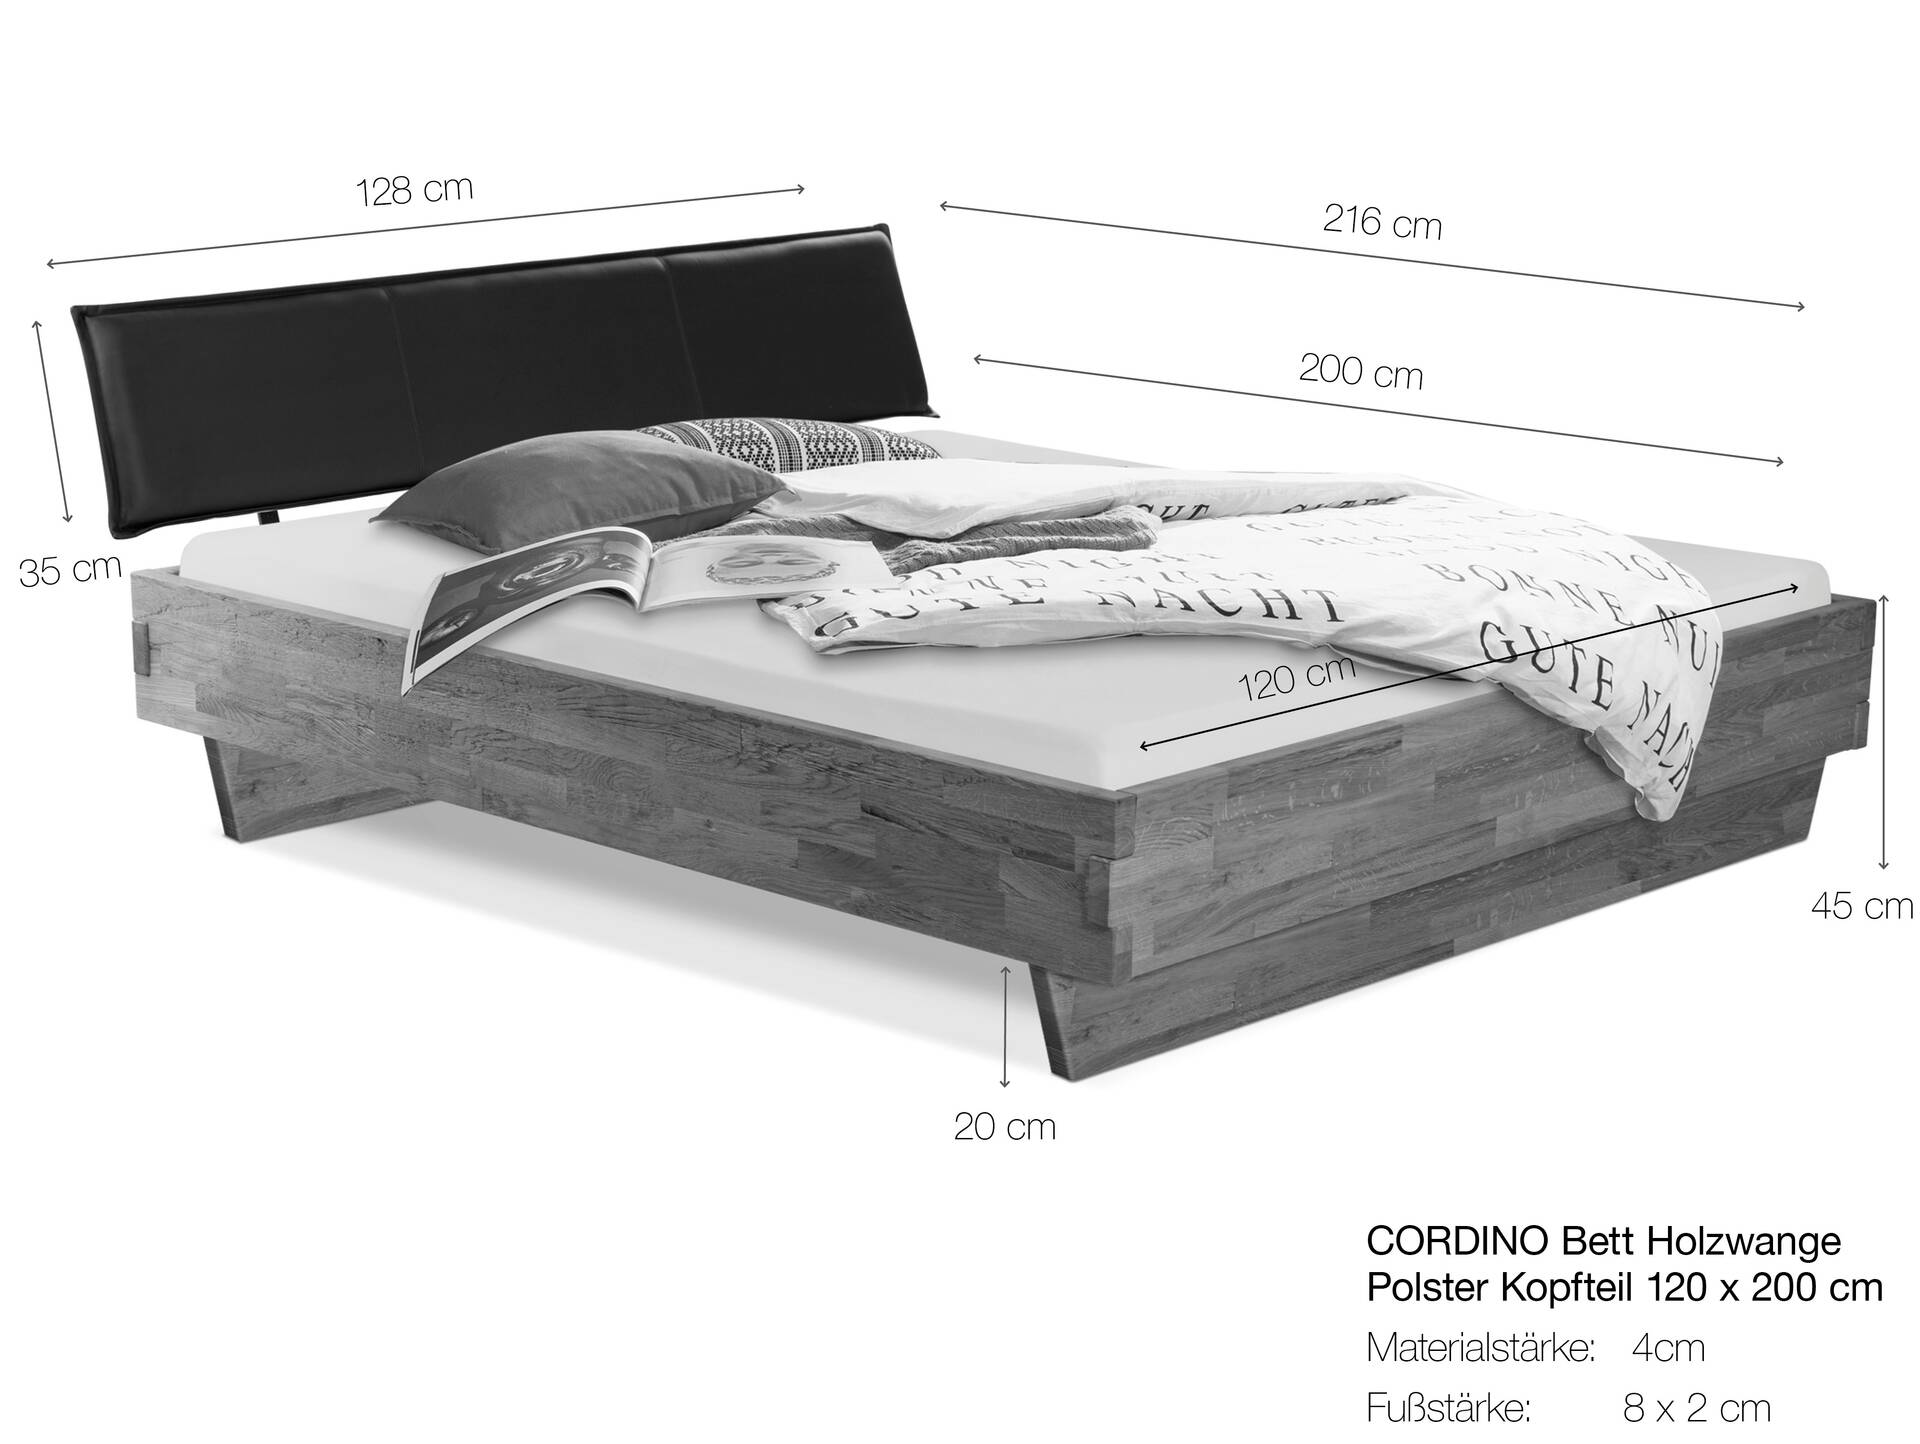 CORDINO Wangenbett aus Eiche mit Polster-Kopfteil, Material Massivholz 120 x 200 cm | Eiche lackiert | Stoff Braun | gehackt